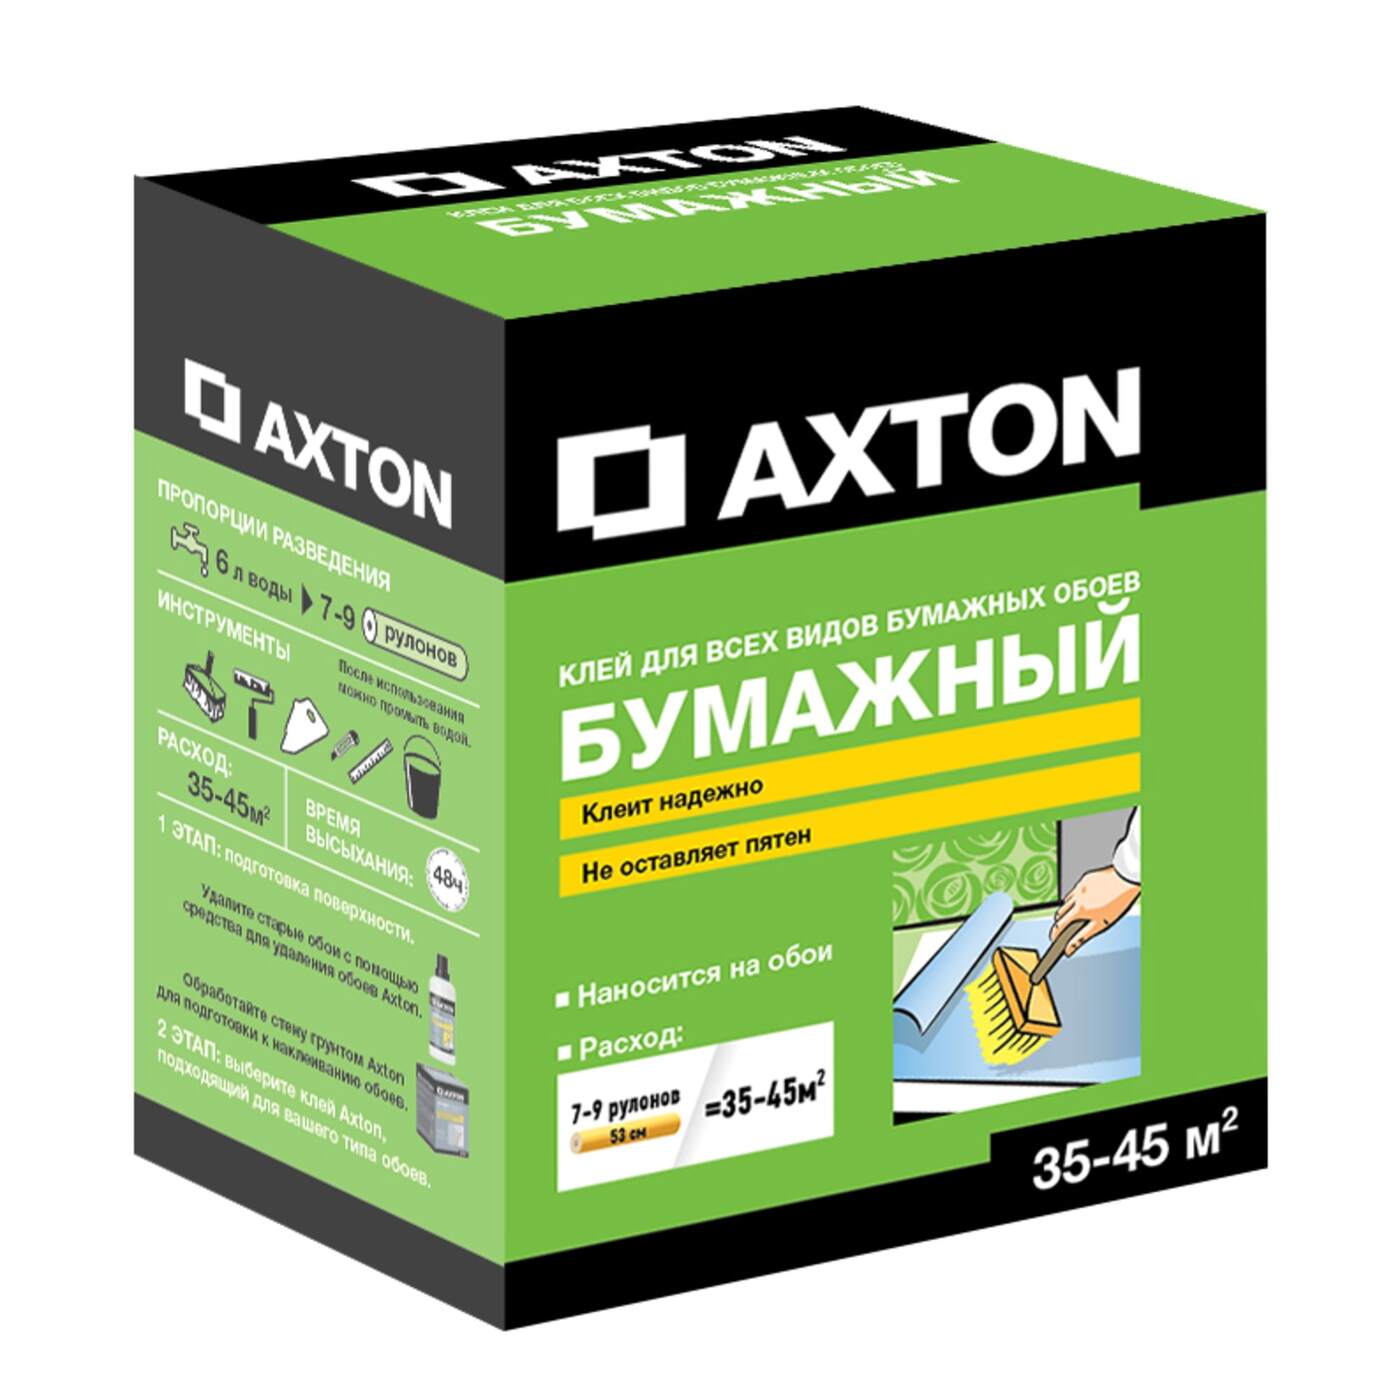 Клей для обоев axton. Клей для бумажных обоев Axton 35-45 м². Axton клей обойный. Клей для бумажных обоев Axton. Леруа Мерлен клей Axton.